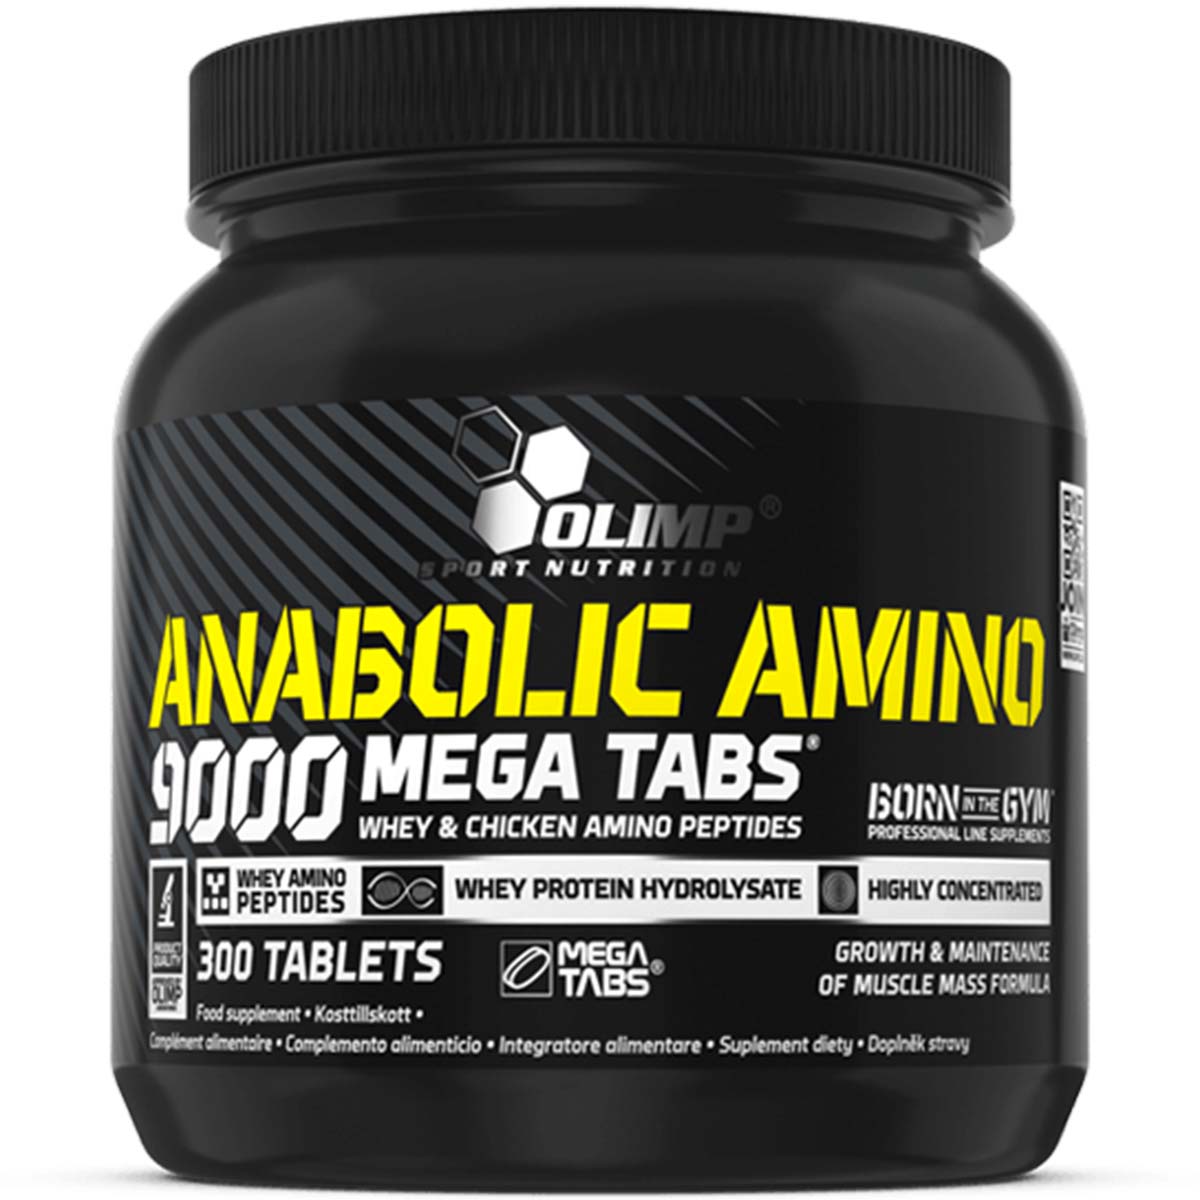 Olimp Anabolic Amino 9000 Mega Tabs 300 Tablets